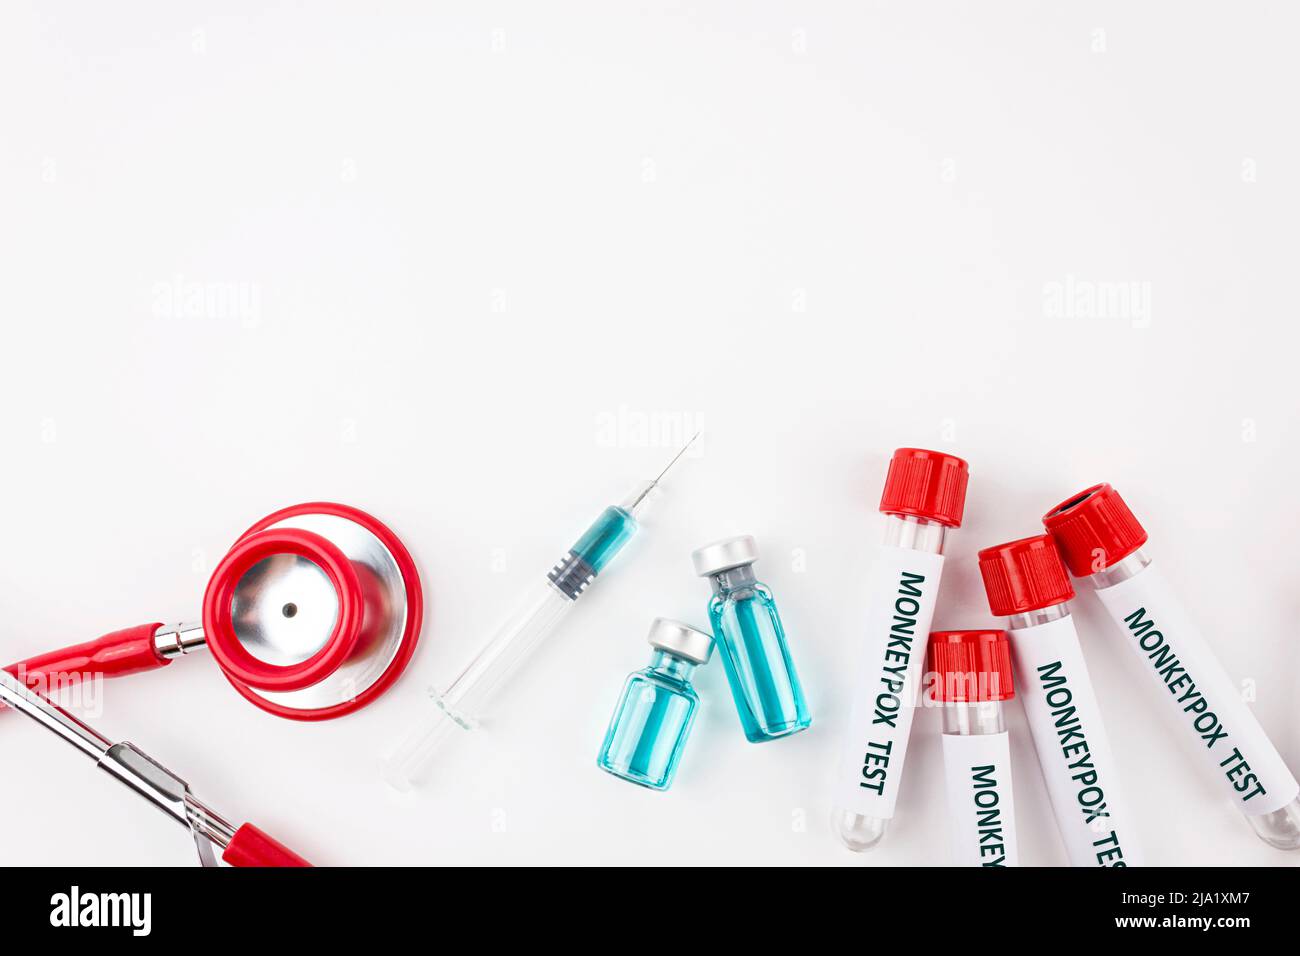 Provetta per campioni ematici per test del virus Monkeypox, stetoscopio e siringa con varicella vaccinale su sfondo bianco. Concetto medico. Vista dall'alto. Foto Stock